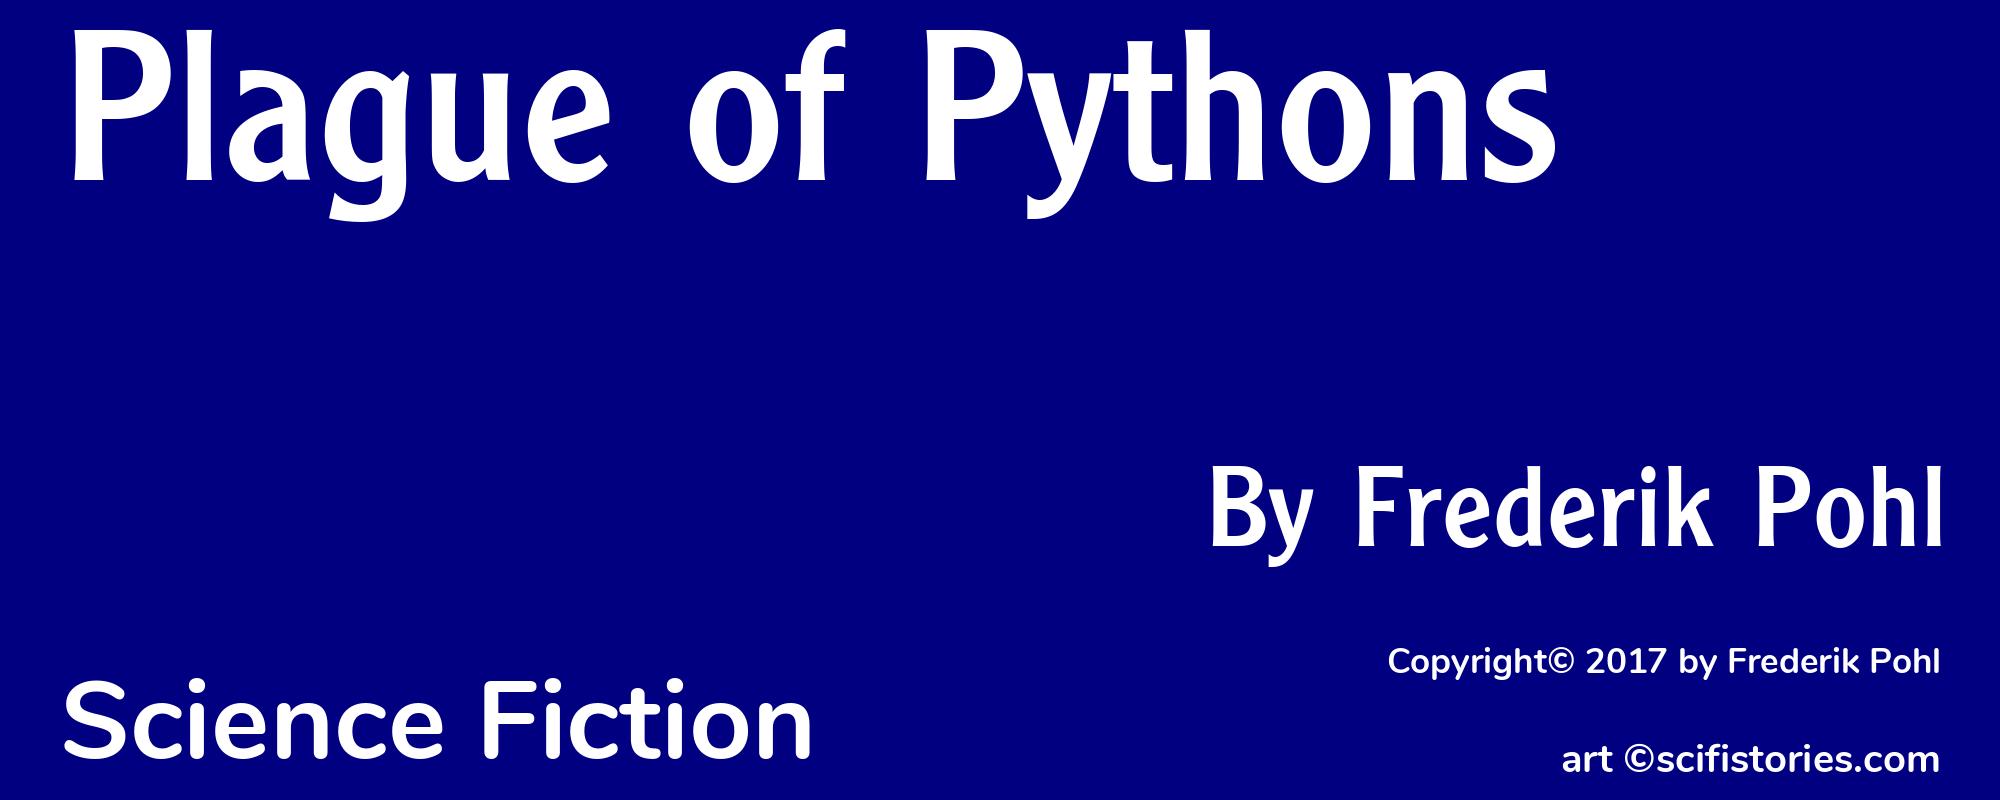 Plague of Pythons - Cover